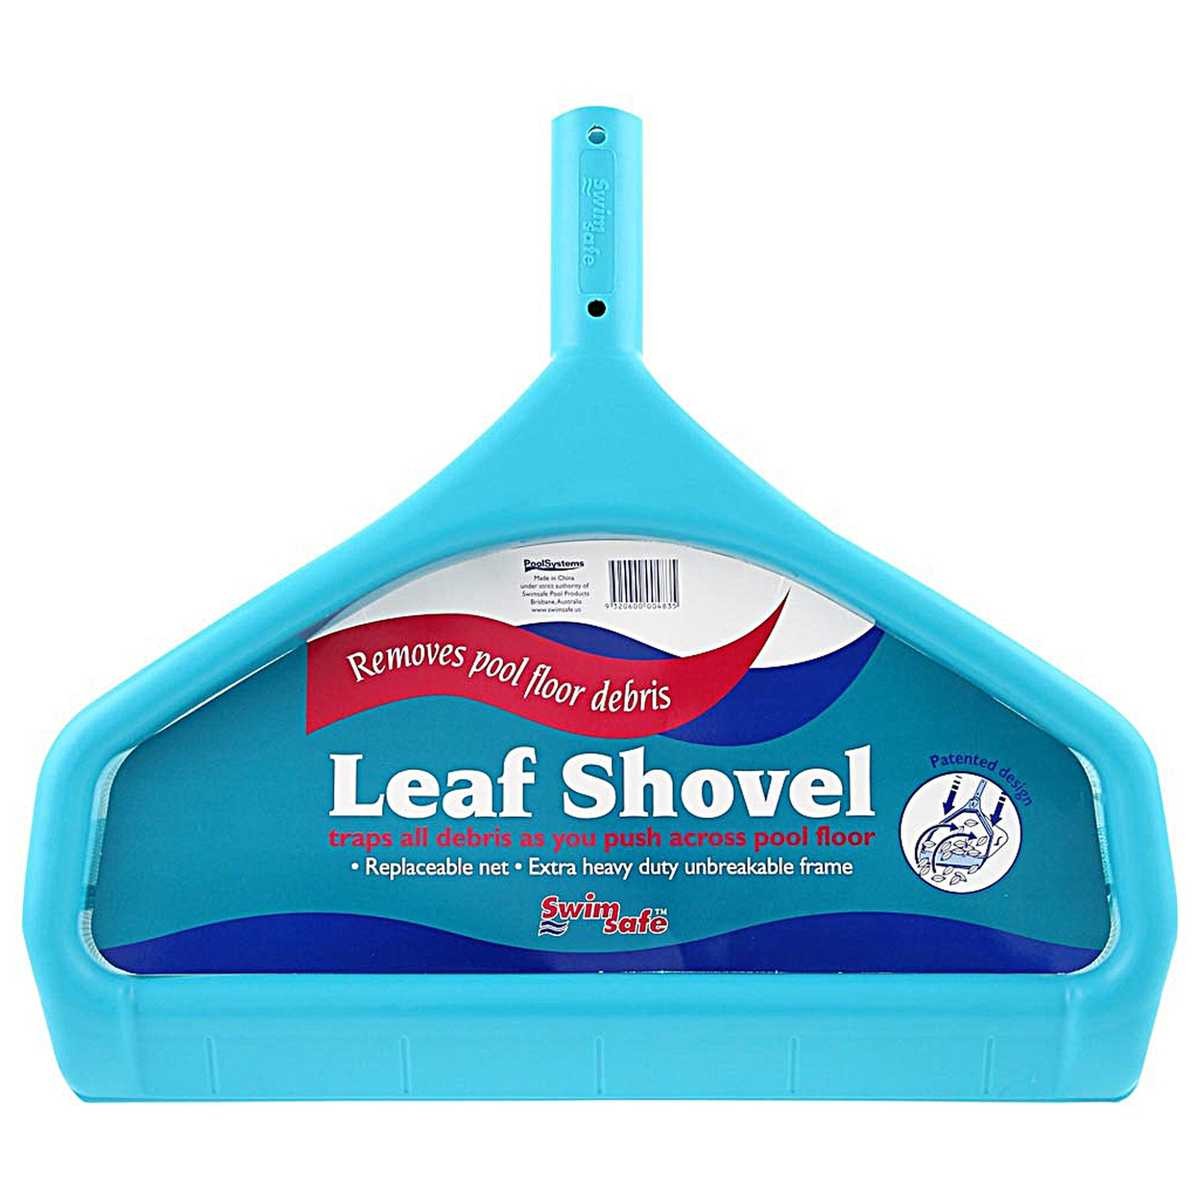 Super Leaf Shovel